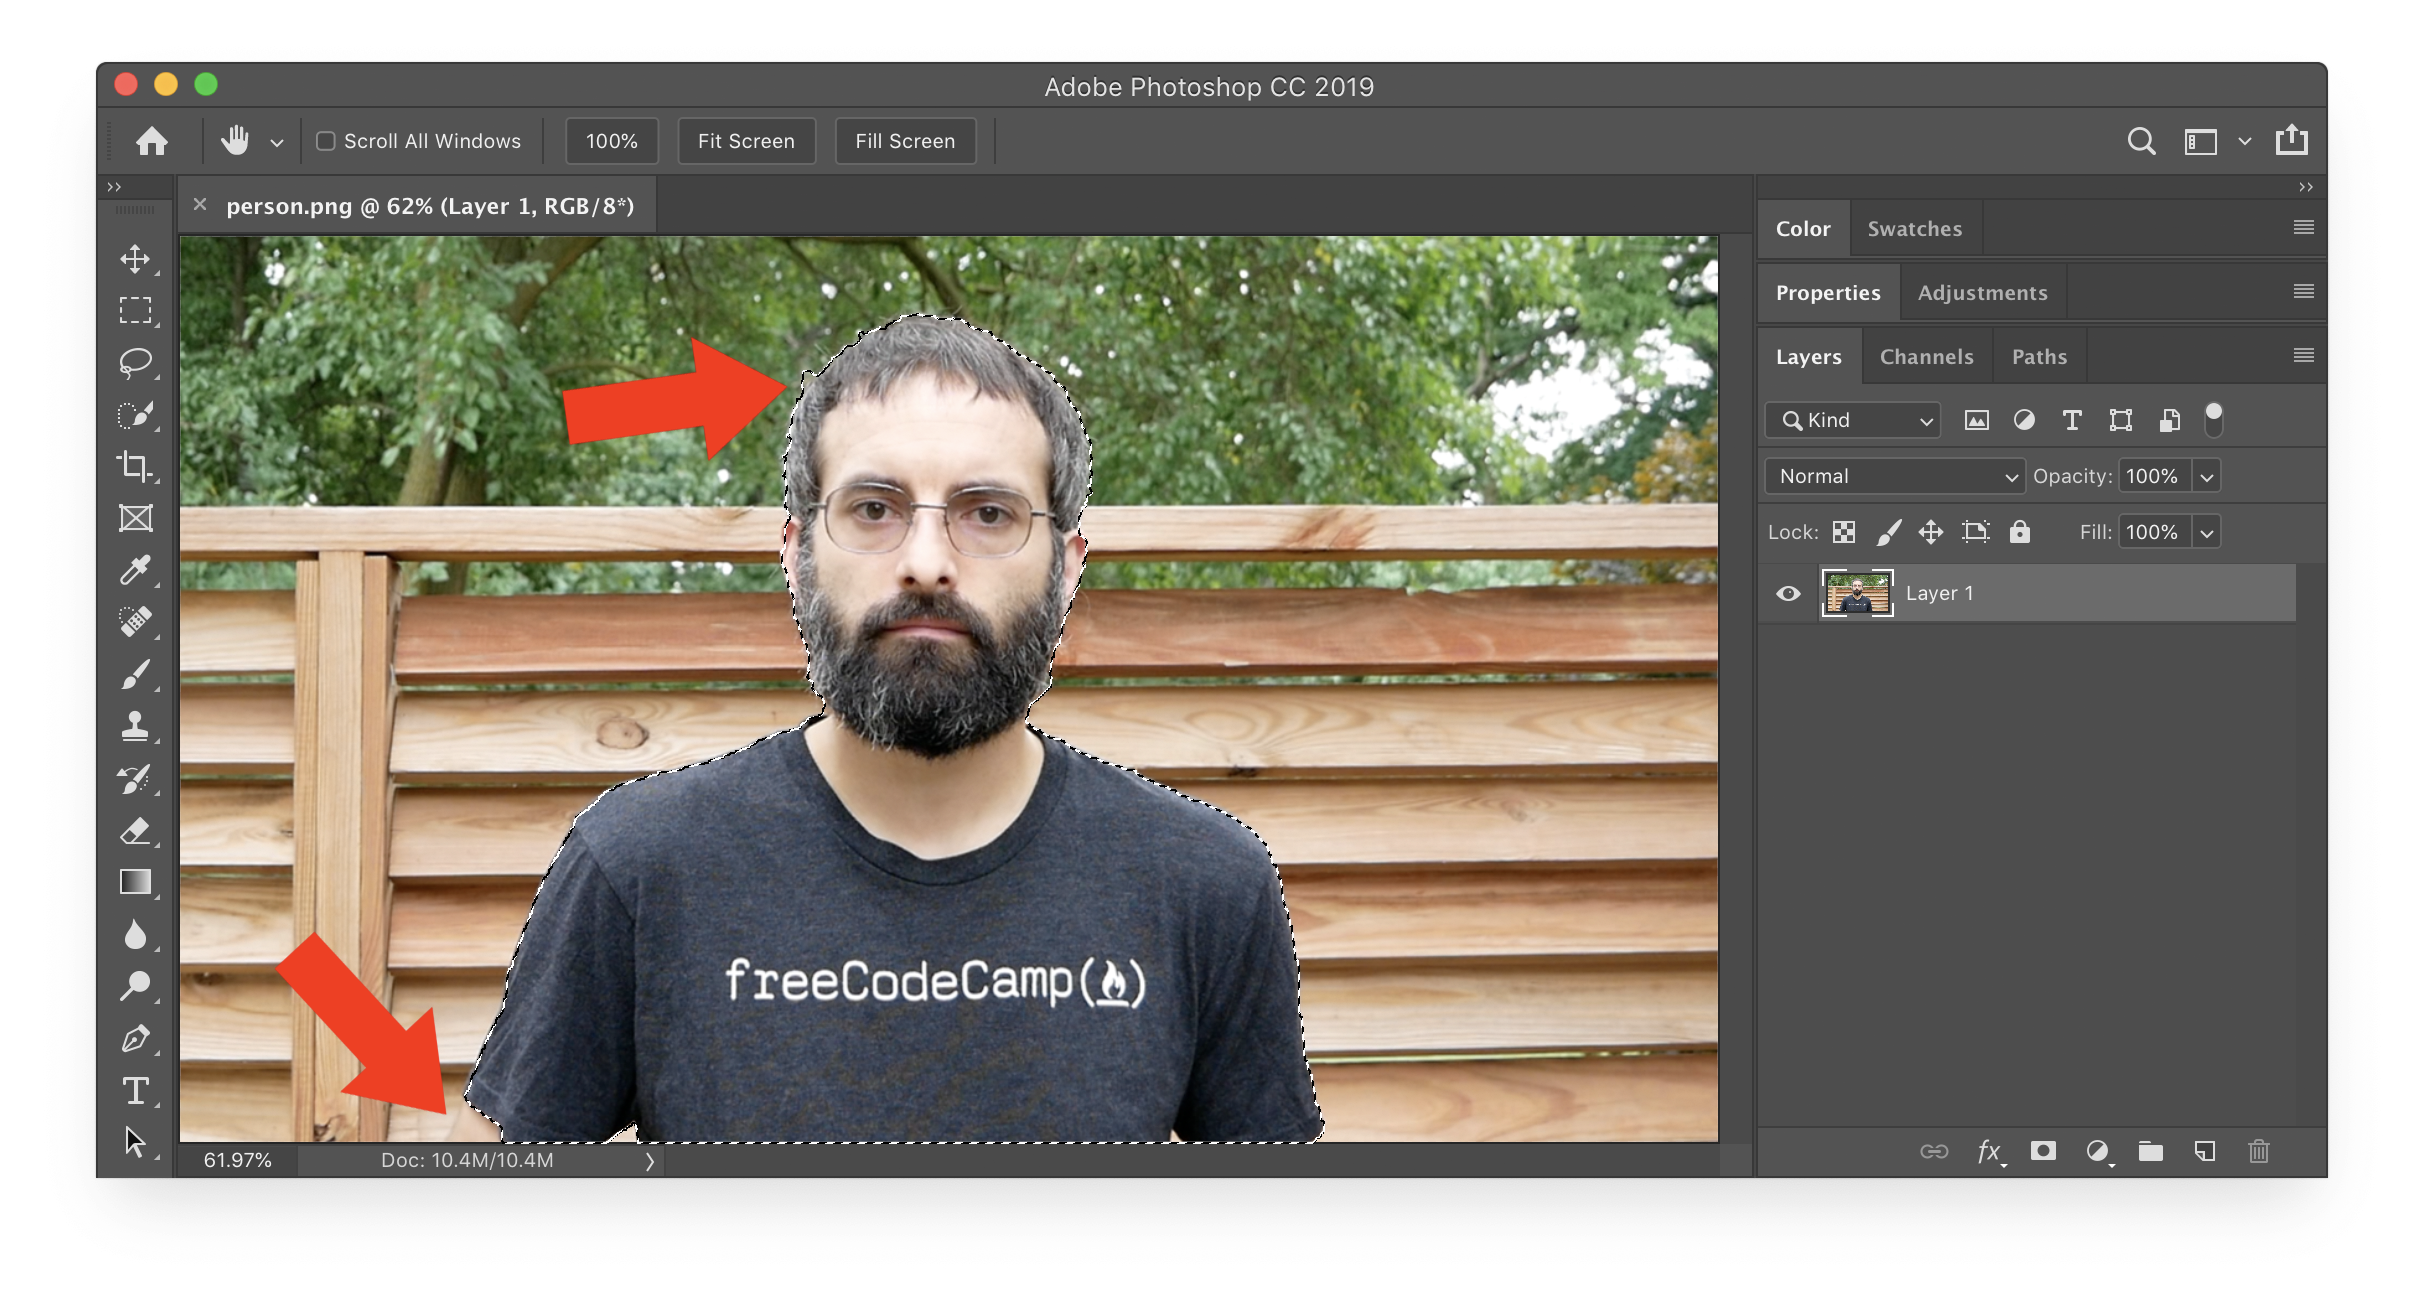 Công cụ Eraser nền trong Photoshop CC là một công cụ vô cùng hữu ích để giúp bạn xóa nền ảnh của mình. Với những tips và trick được chia sẻ trong video liên quan, bạn có thể dễ dàng sử dụng công cụ này một cách hiệu quả và nhanh chóng. Tìm hiểu thêm và trở thành một chuyên gia về xóa nền ảnh với Adobe.